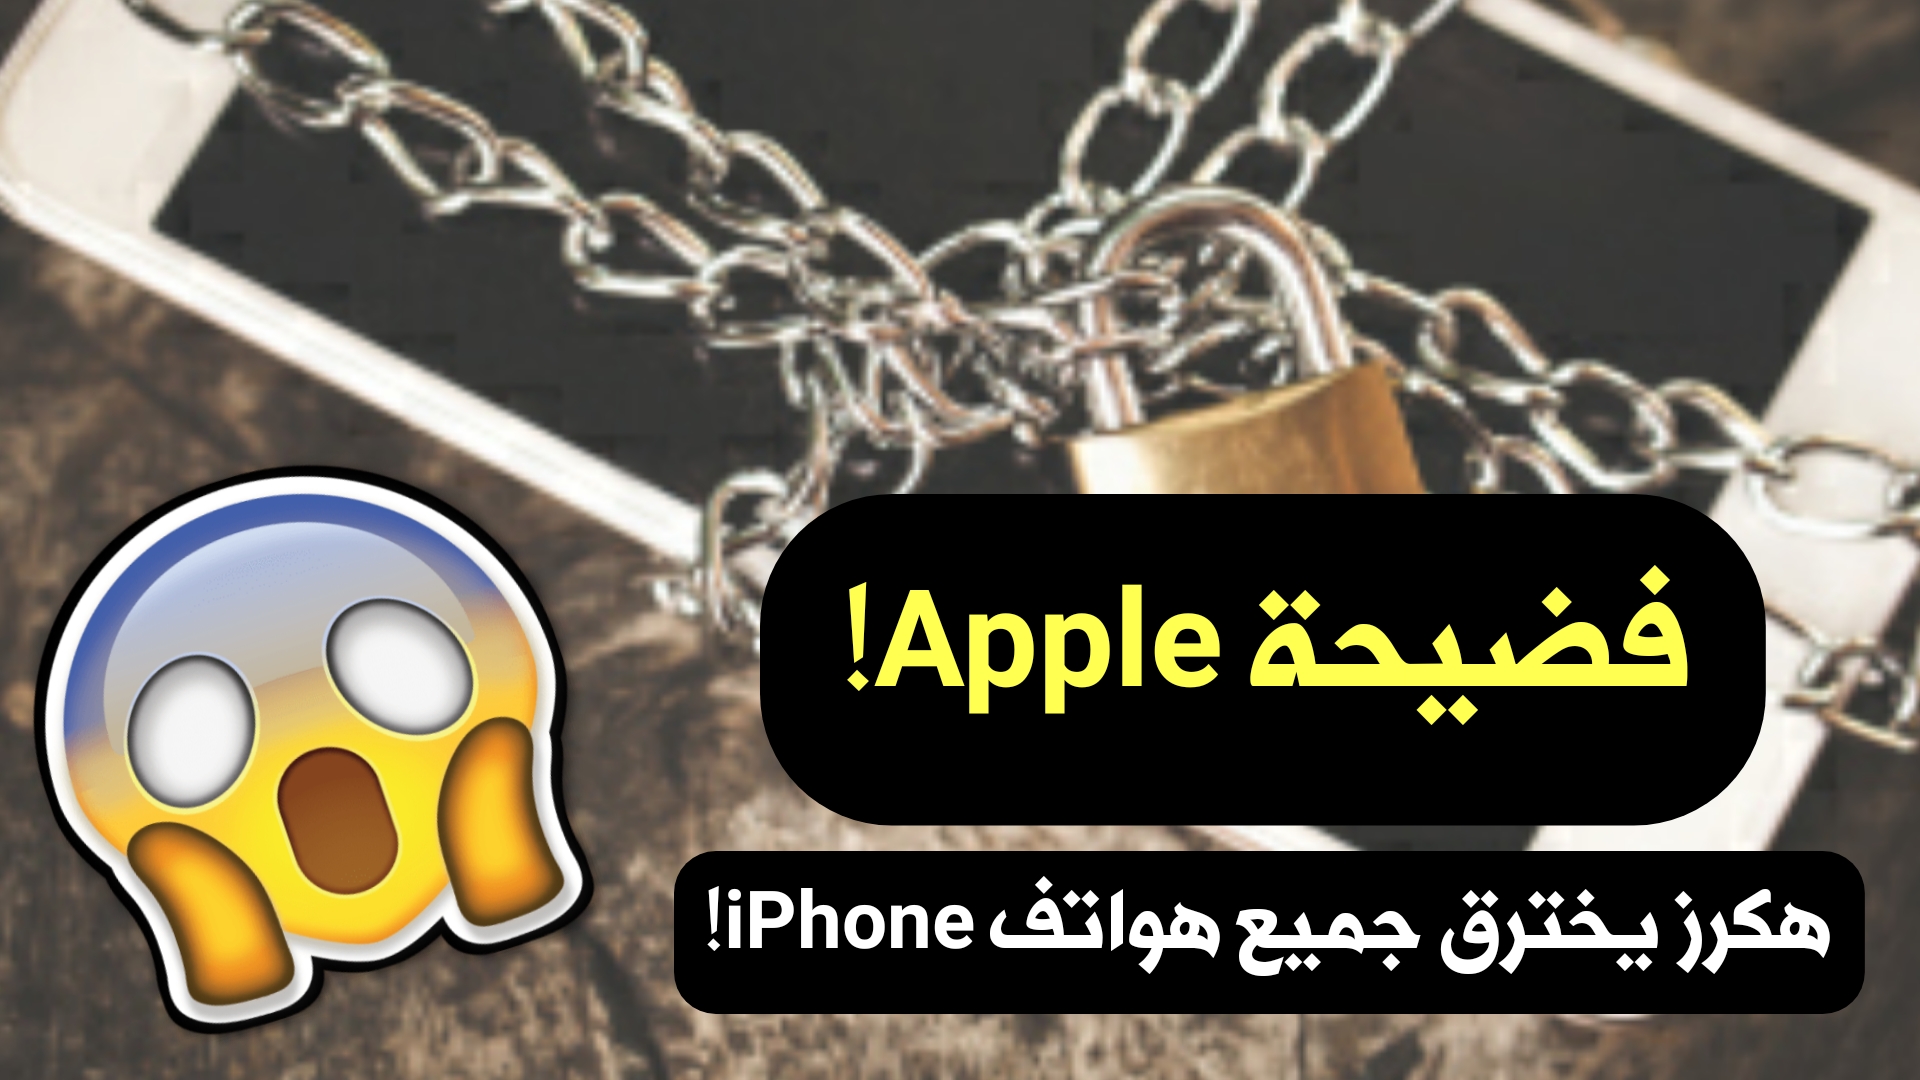 فضيحة Apple ! هكرز يخترق جميع هواتف iPhone بأستخدام أداة جيلبريك مطورة!